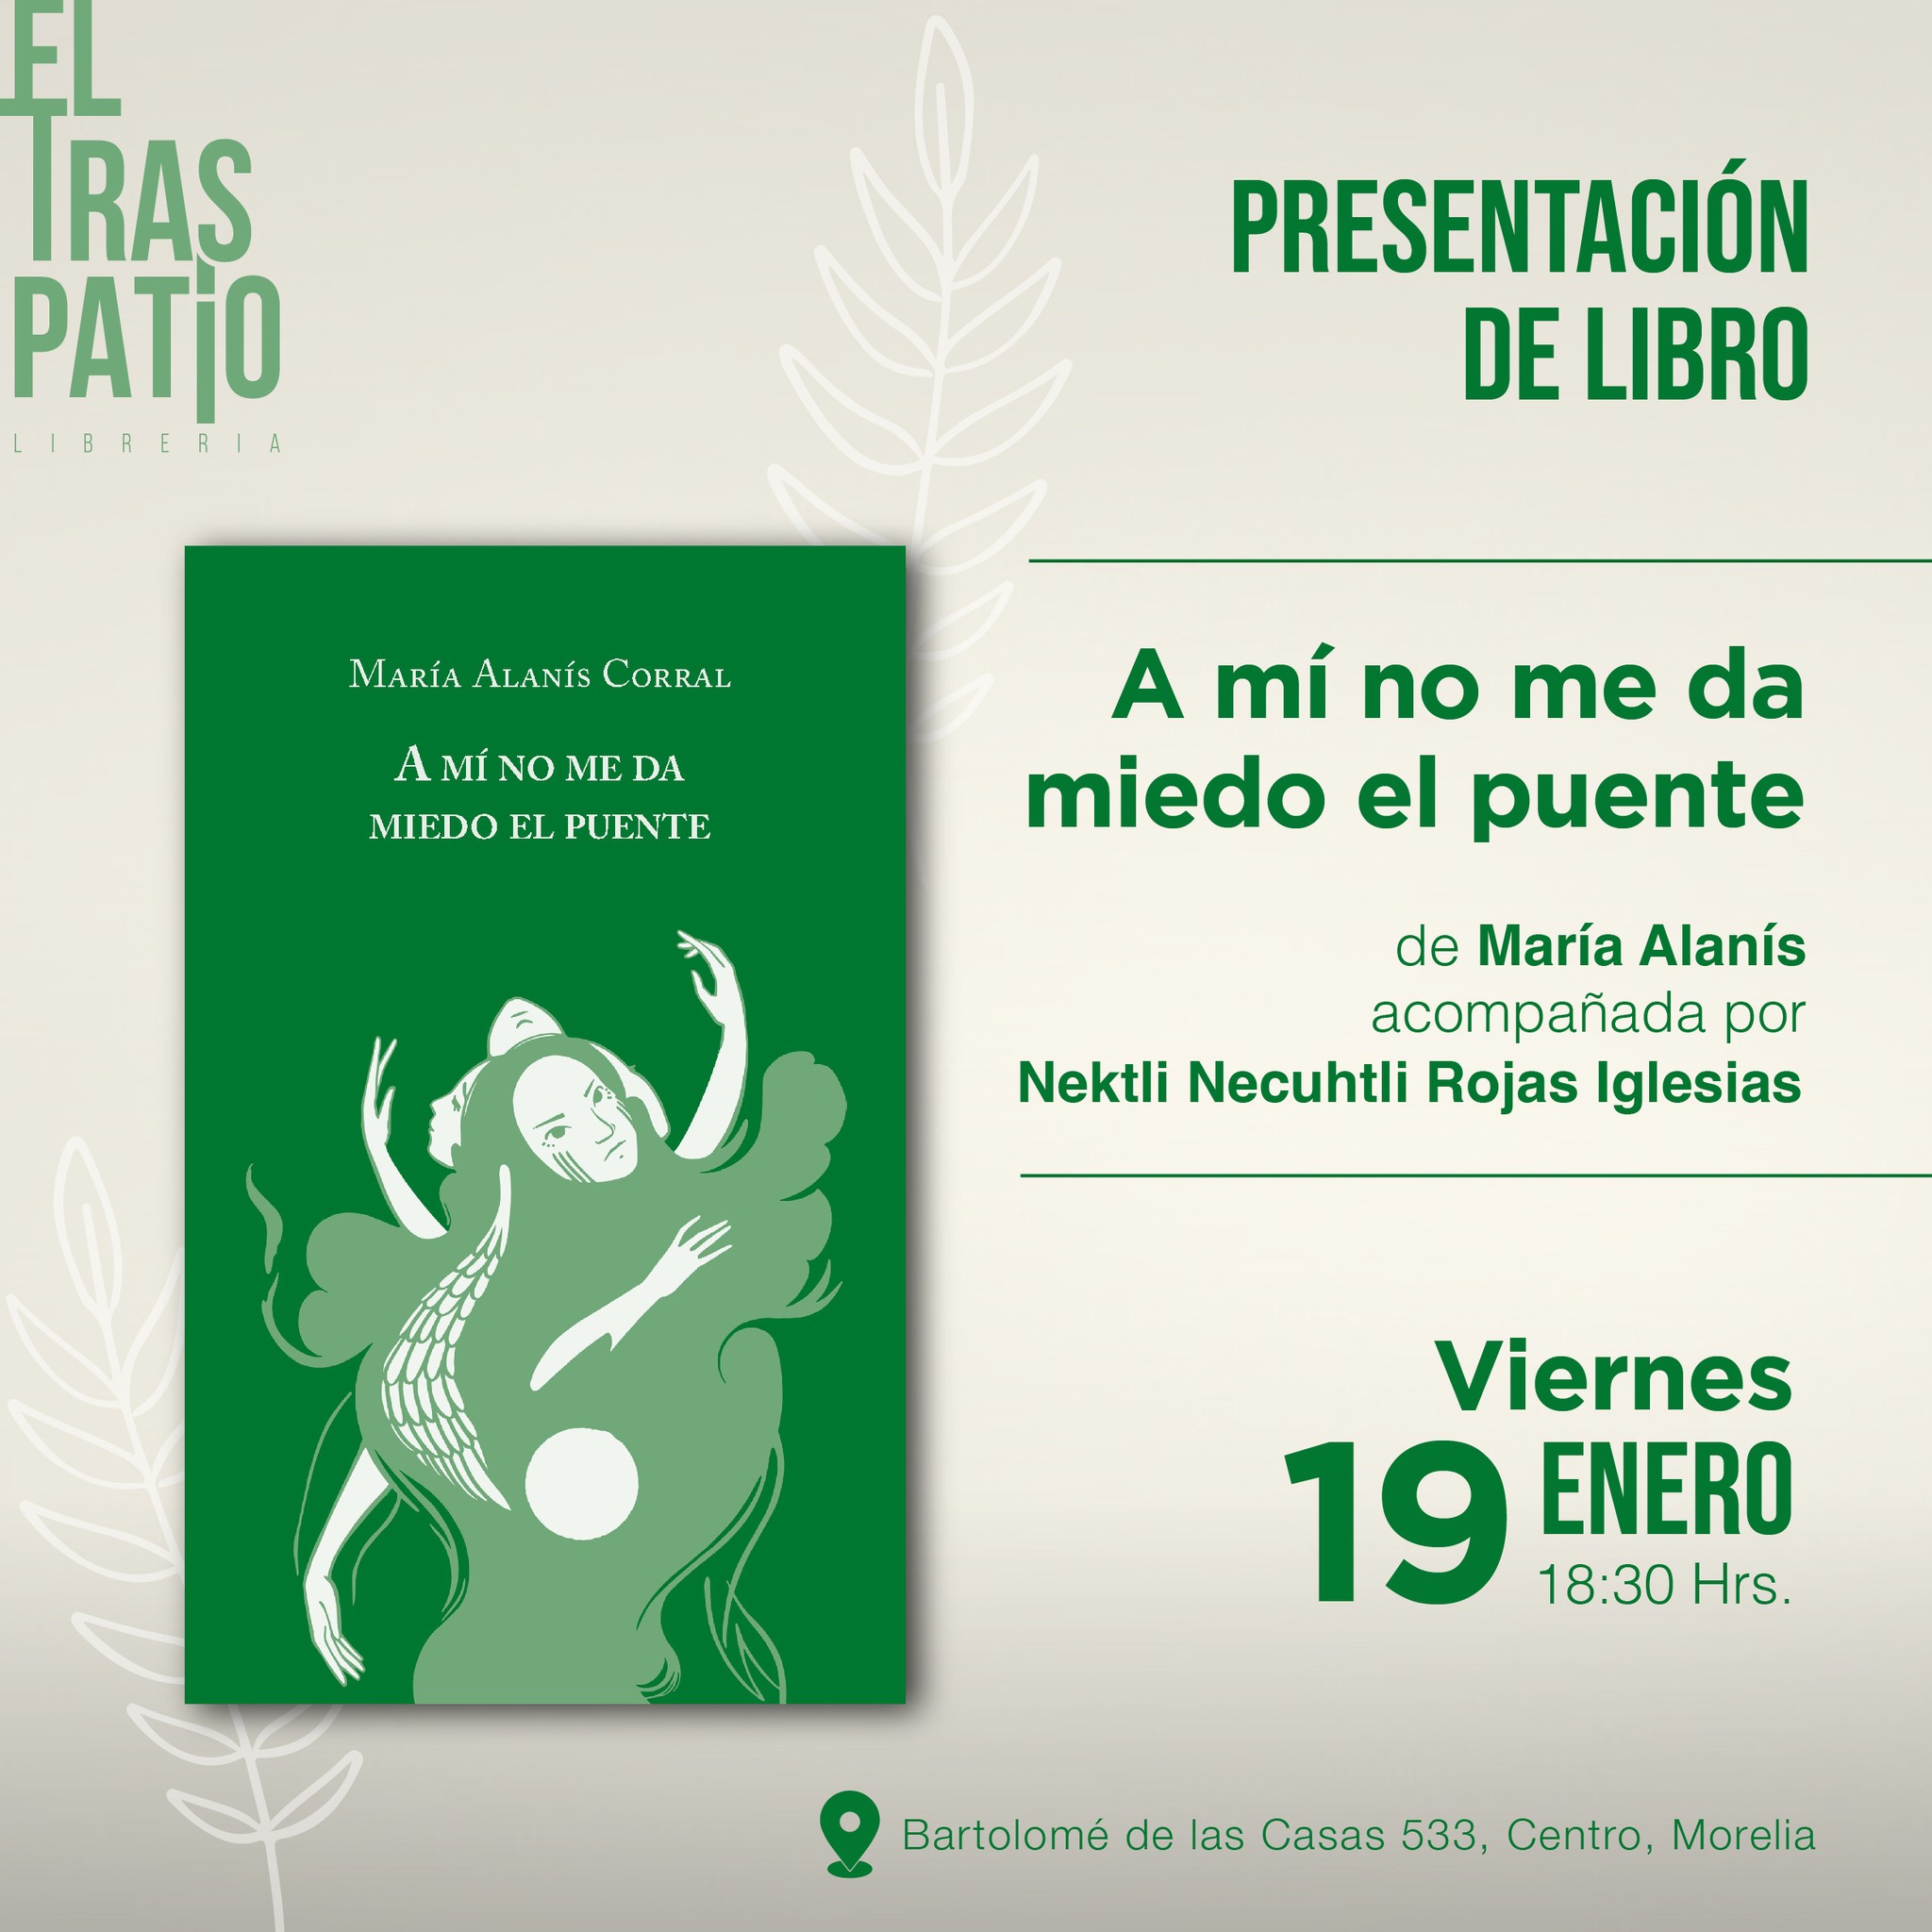 Asiste a la presentación del libro “A mí no me da miedo el puente” de María Alanís